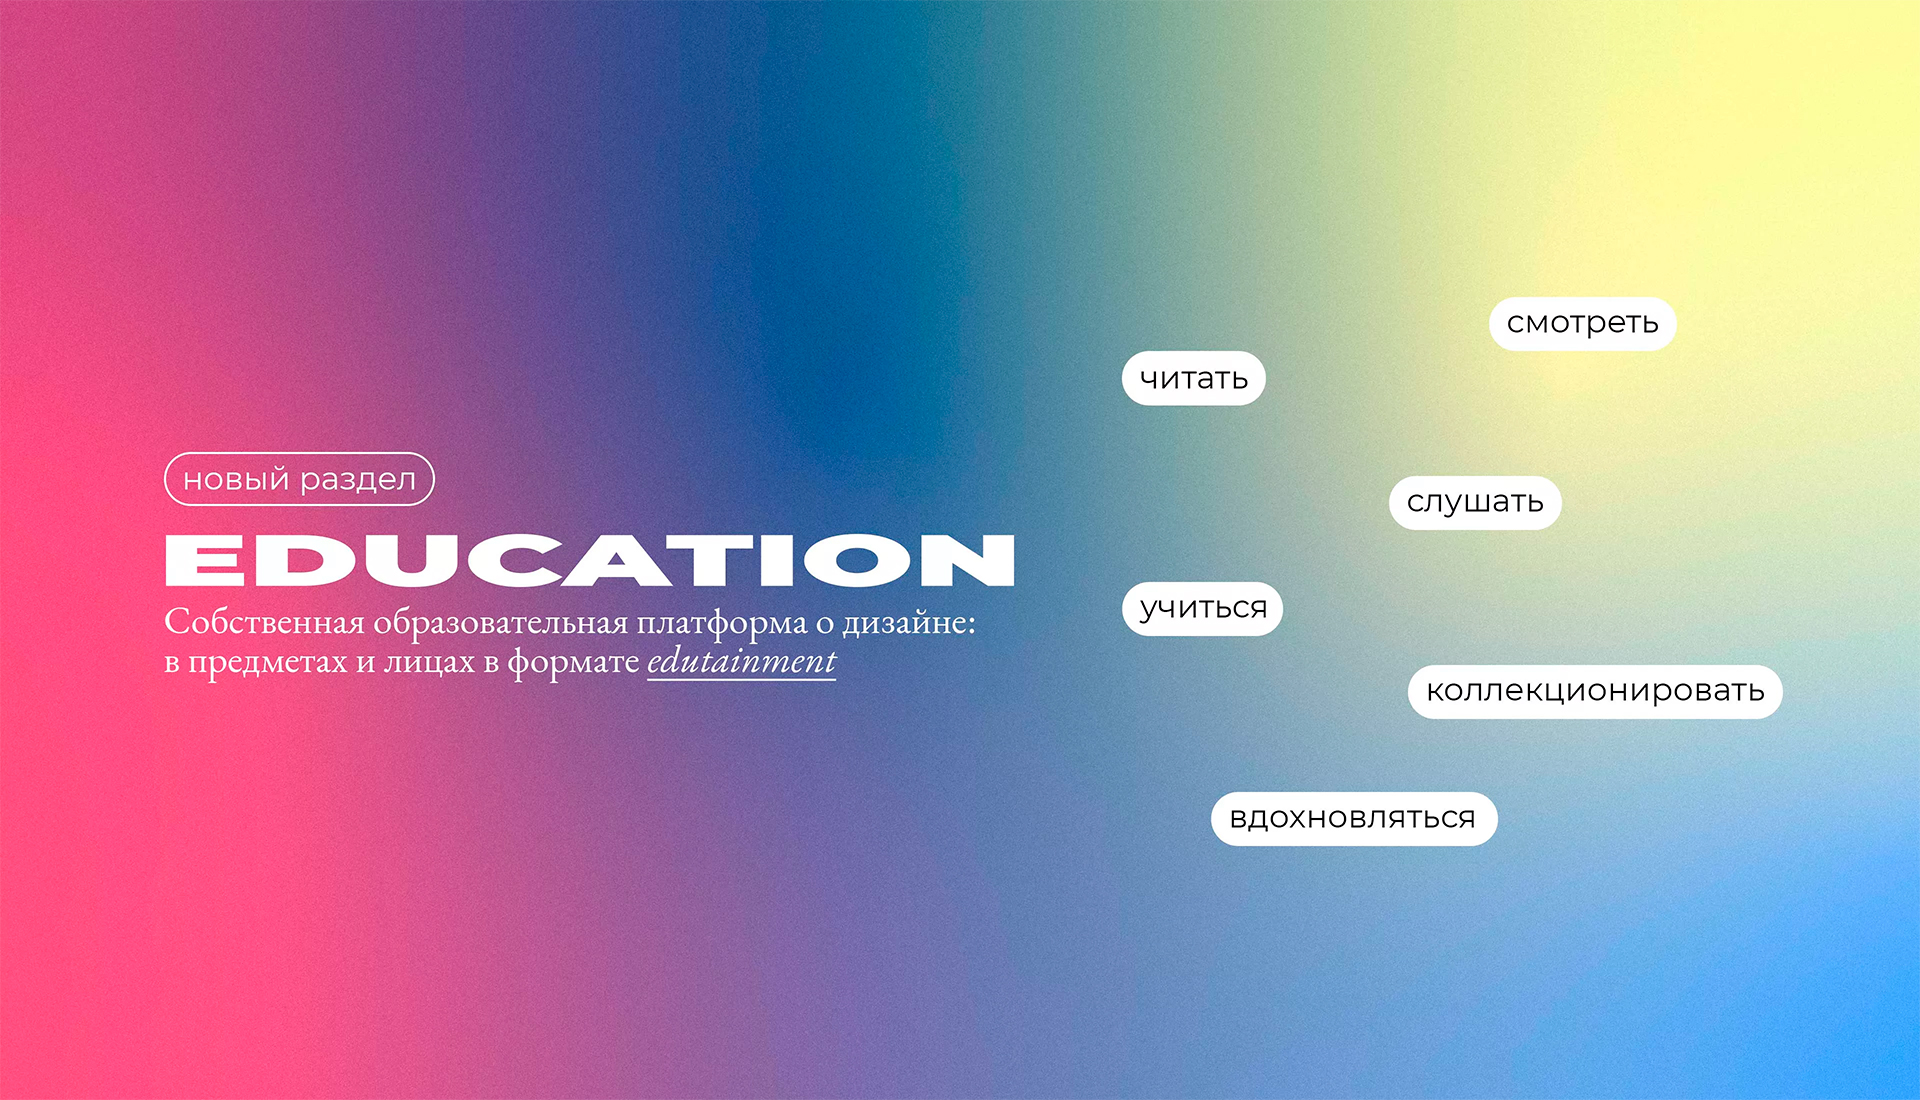 INTERIOR+DESIGN запускает образовательный проект Education